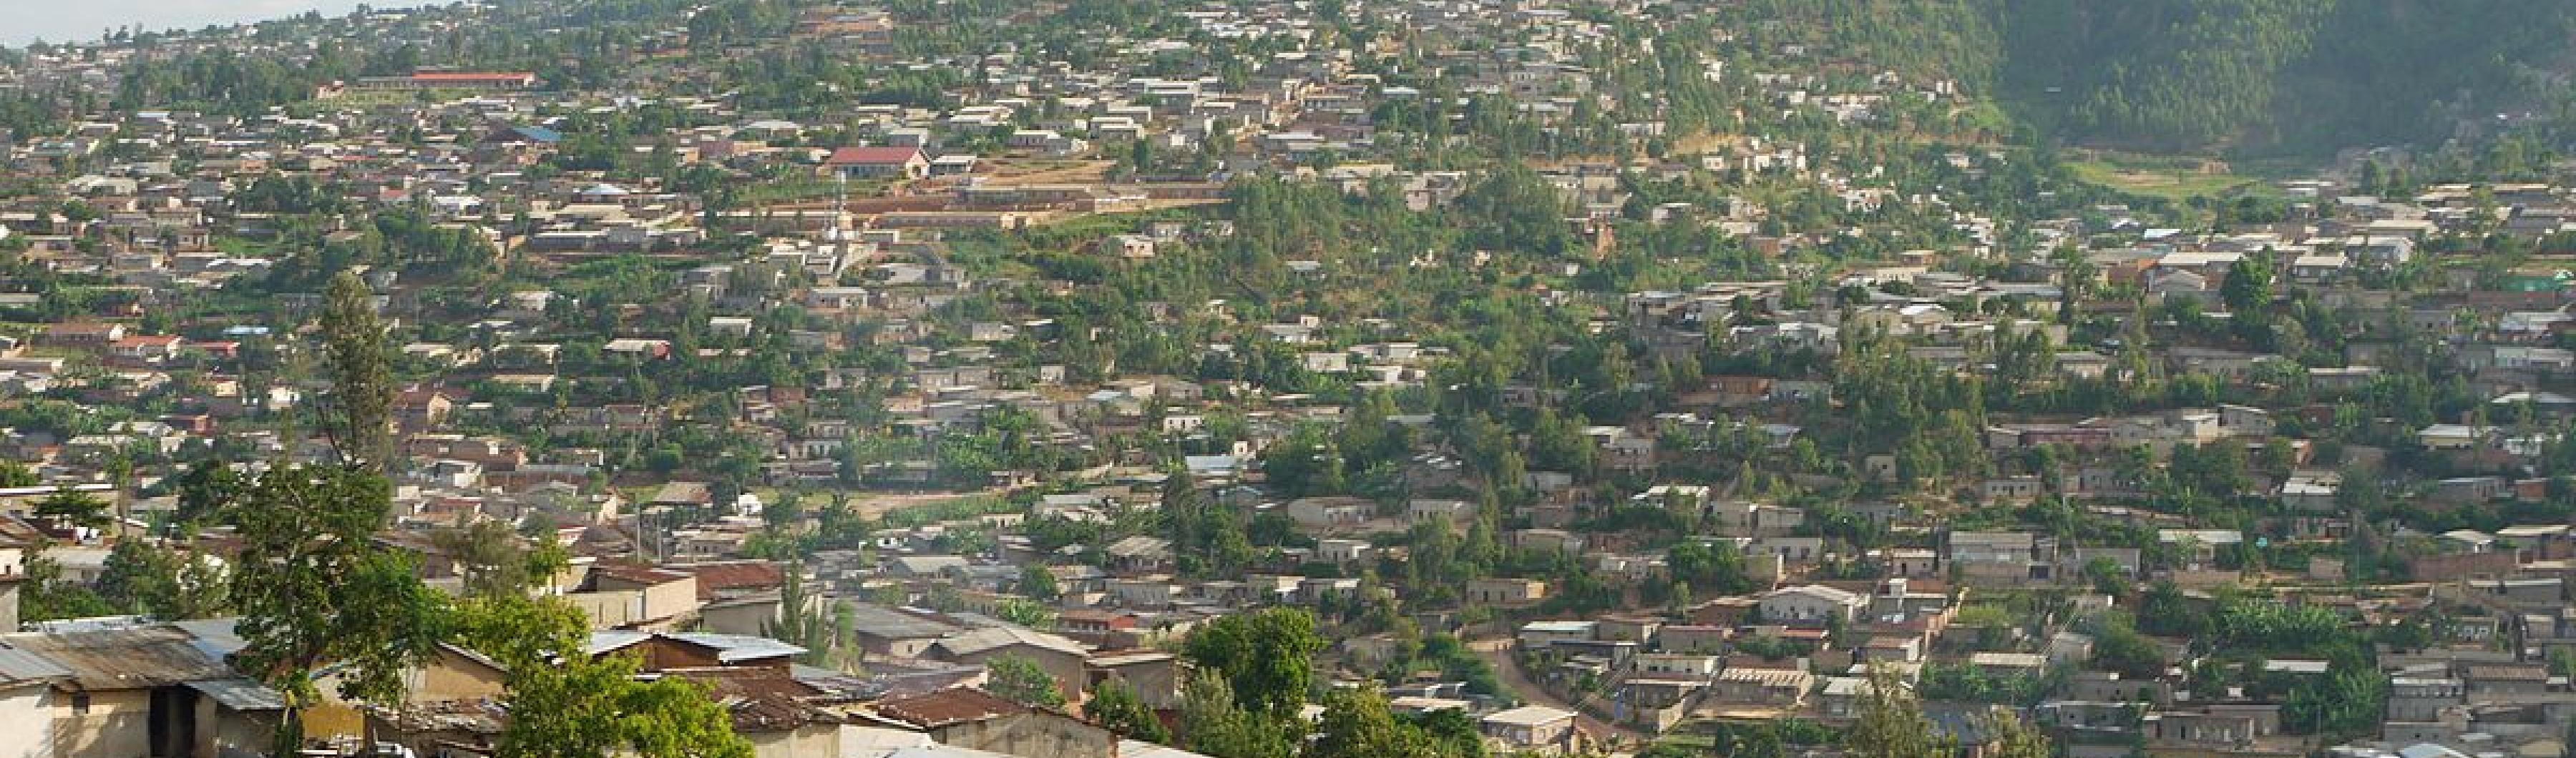 Banlieue de Kigali avec le mont Kigali en arrière-plan